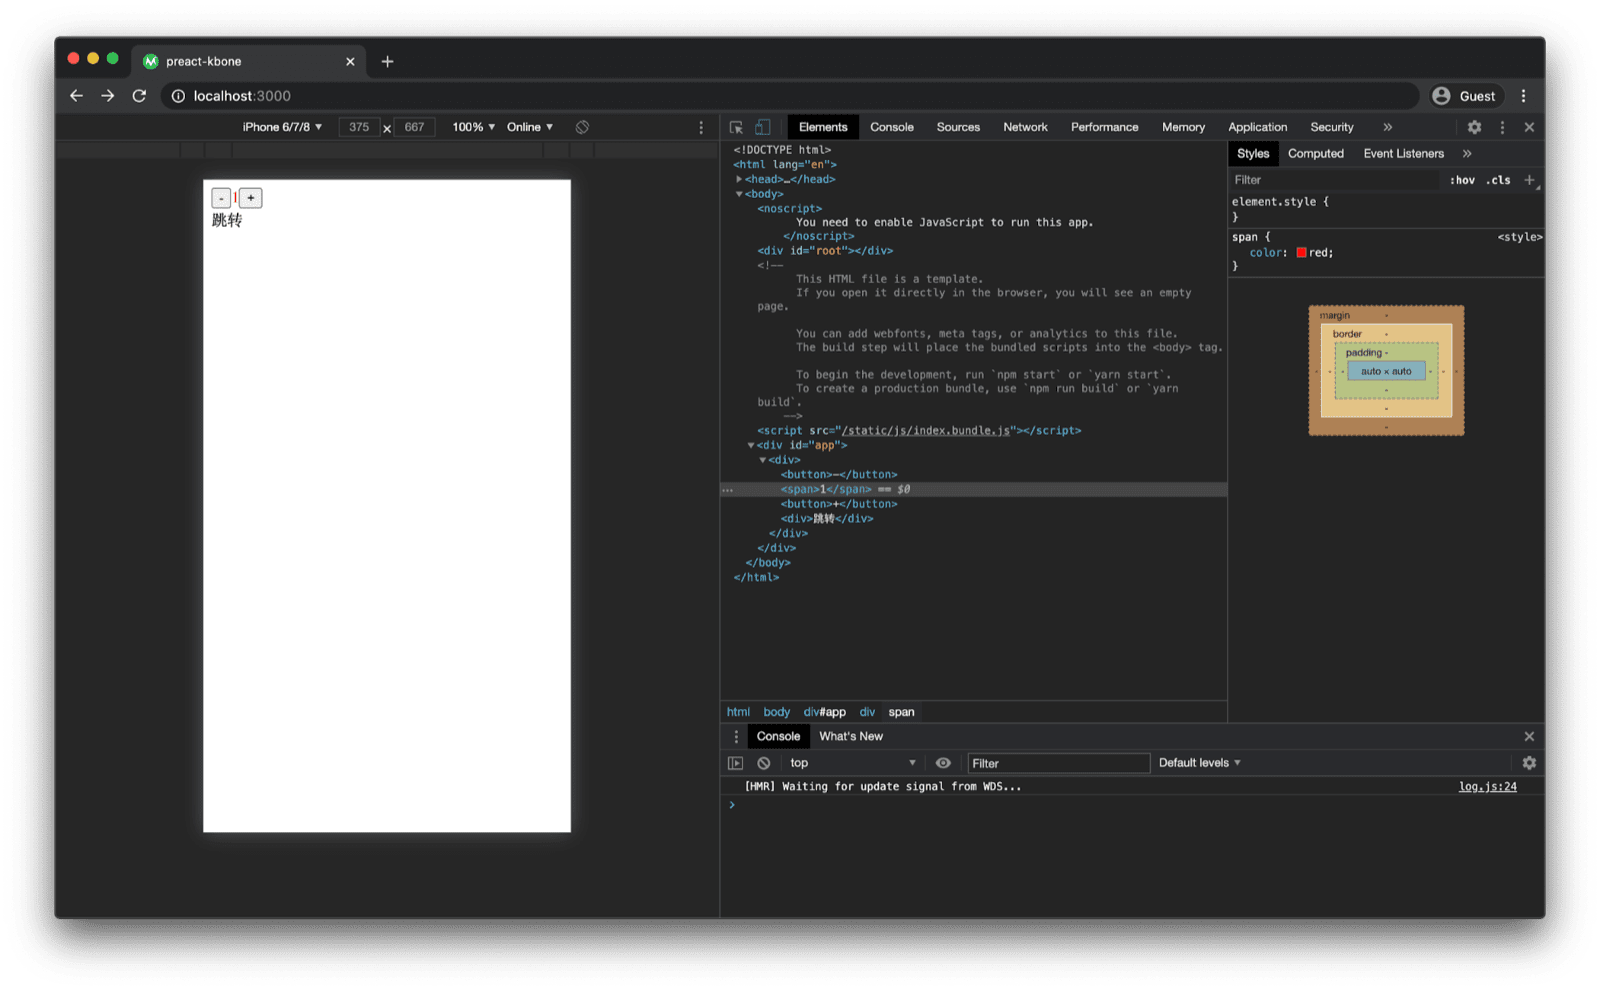 Preact kबोन टेंप्लेट का डेमो ऐप्लिकेशन, वेब ब्राउज़र में खोला गया. डीओएम स्ट्रक्चर की जांच करने से, प्रीैक्ट कॉम्पोनेंट कोड के आधार पर संभावित मार्कअप दिखता है.